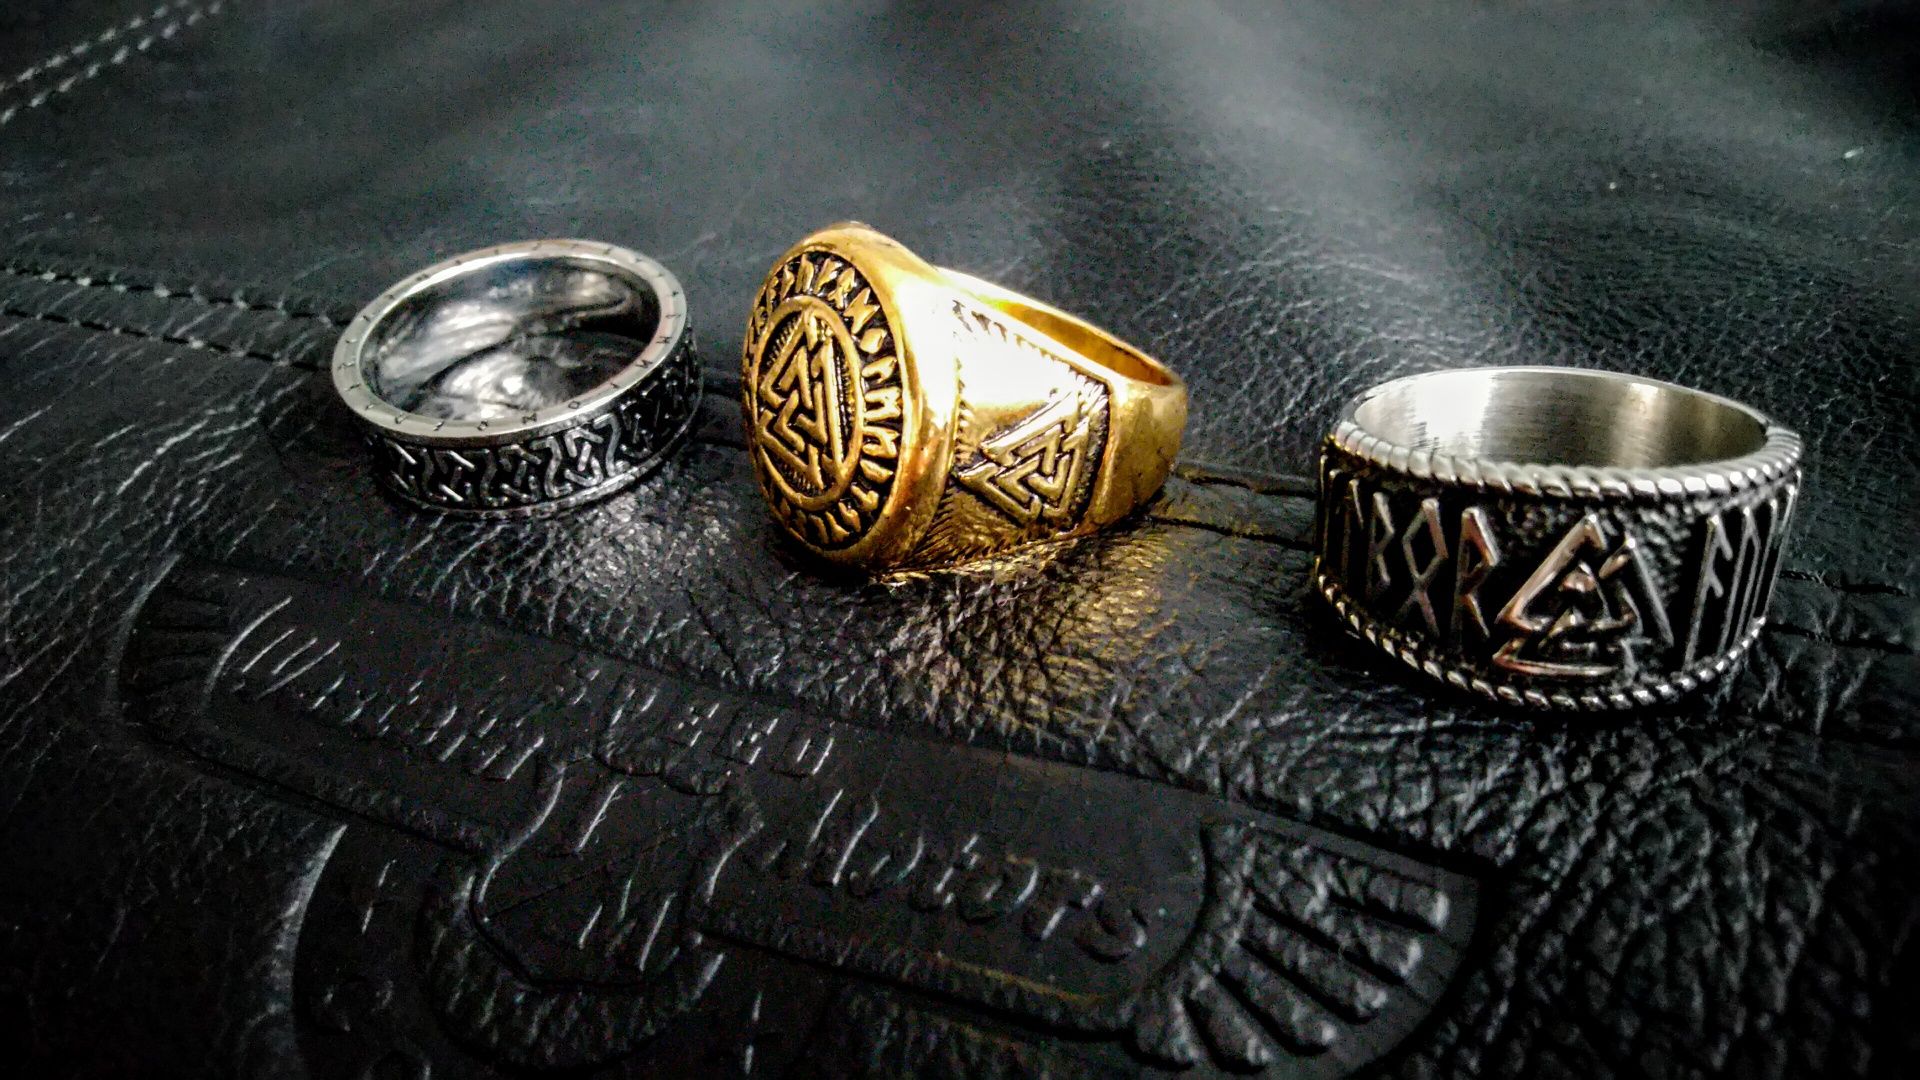 Valknut nordycki sygnet pierścień wikinga wojownika gratisy rabaty